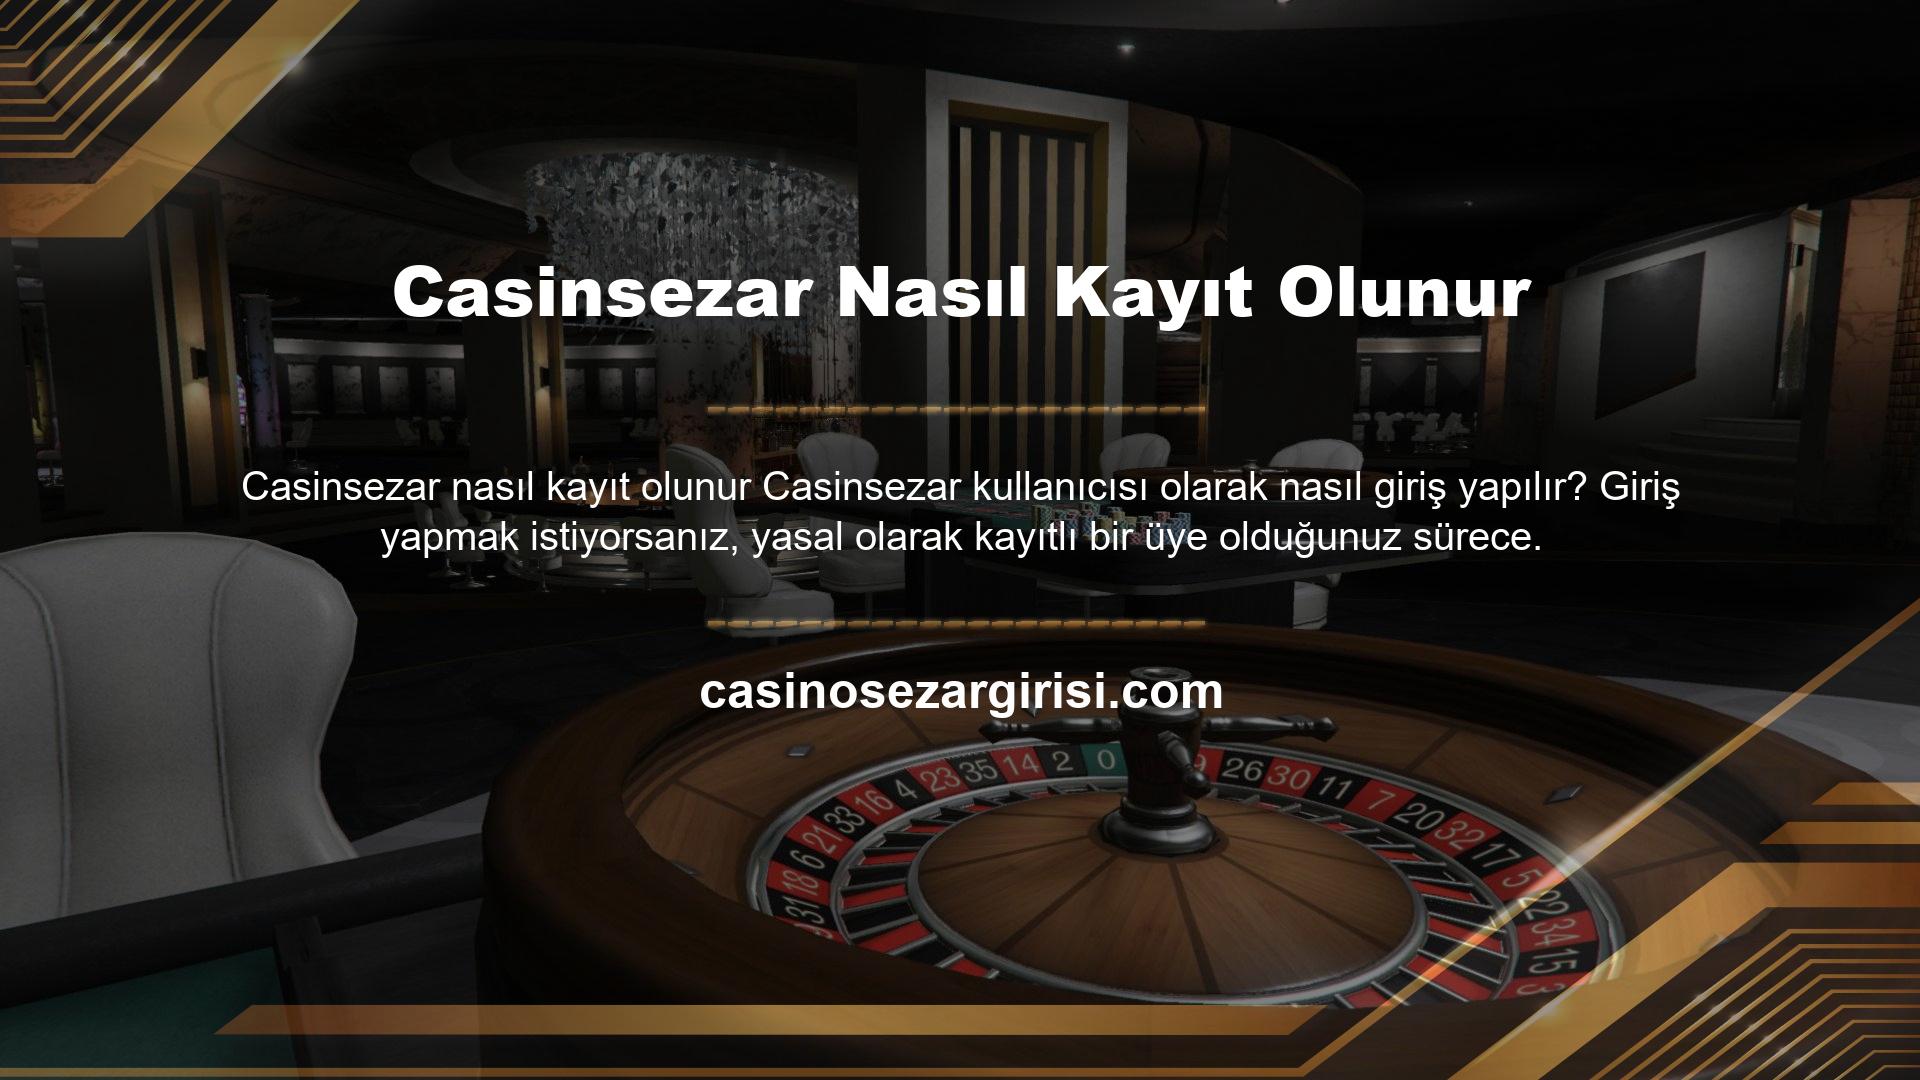 Bu nedenle ülkemizdeki en önemli sitelerden birinden bahis ve casino hizmeti alabileceksiniz